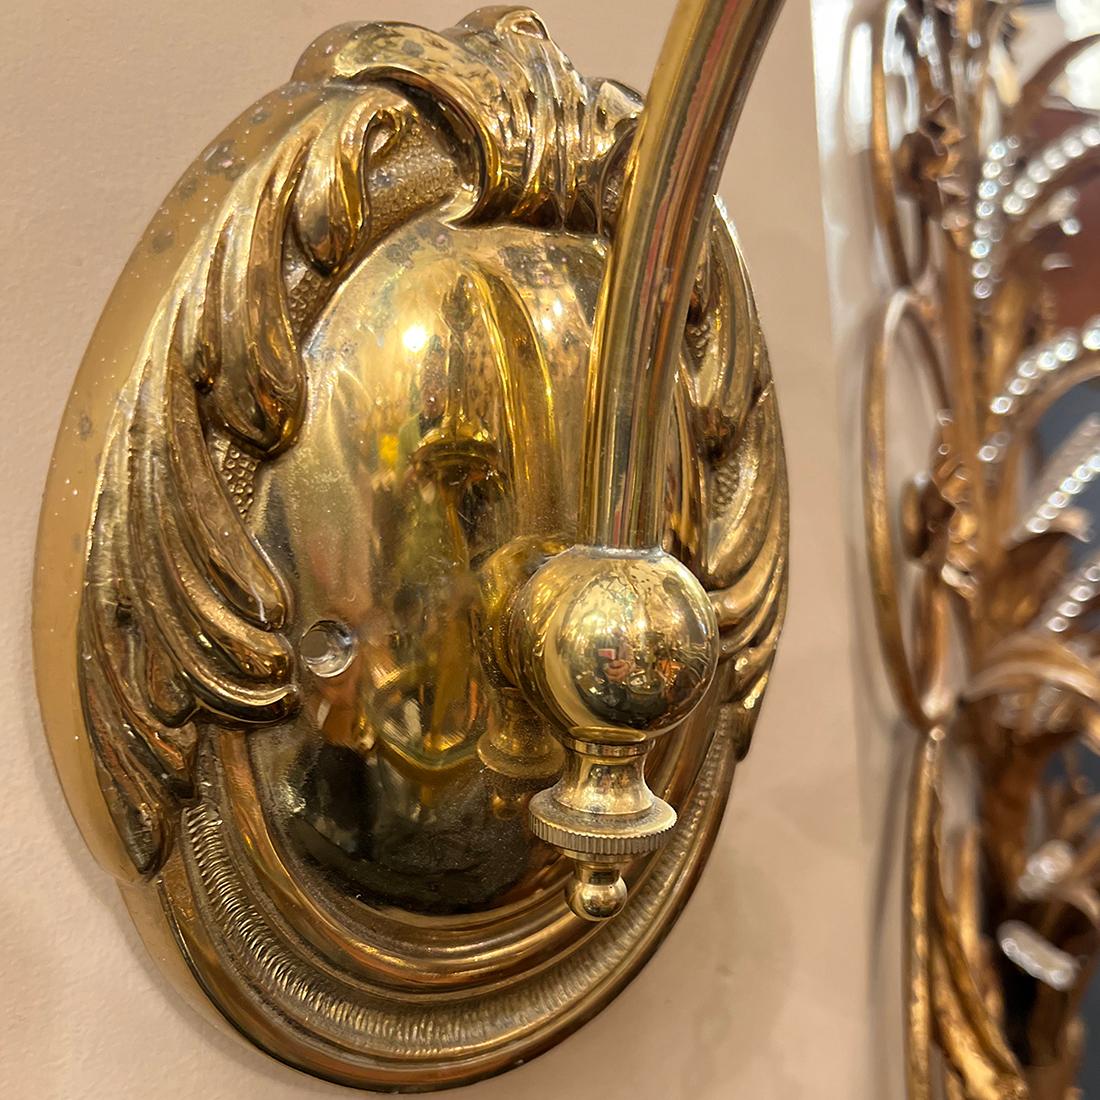 Ein Paar Bronzewandleuchter mit hängendem Glockenglasschirm aus den 1950er Jahren.

Abmessungen:
Höhe: 16.25